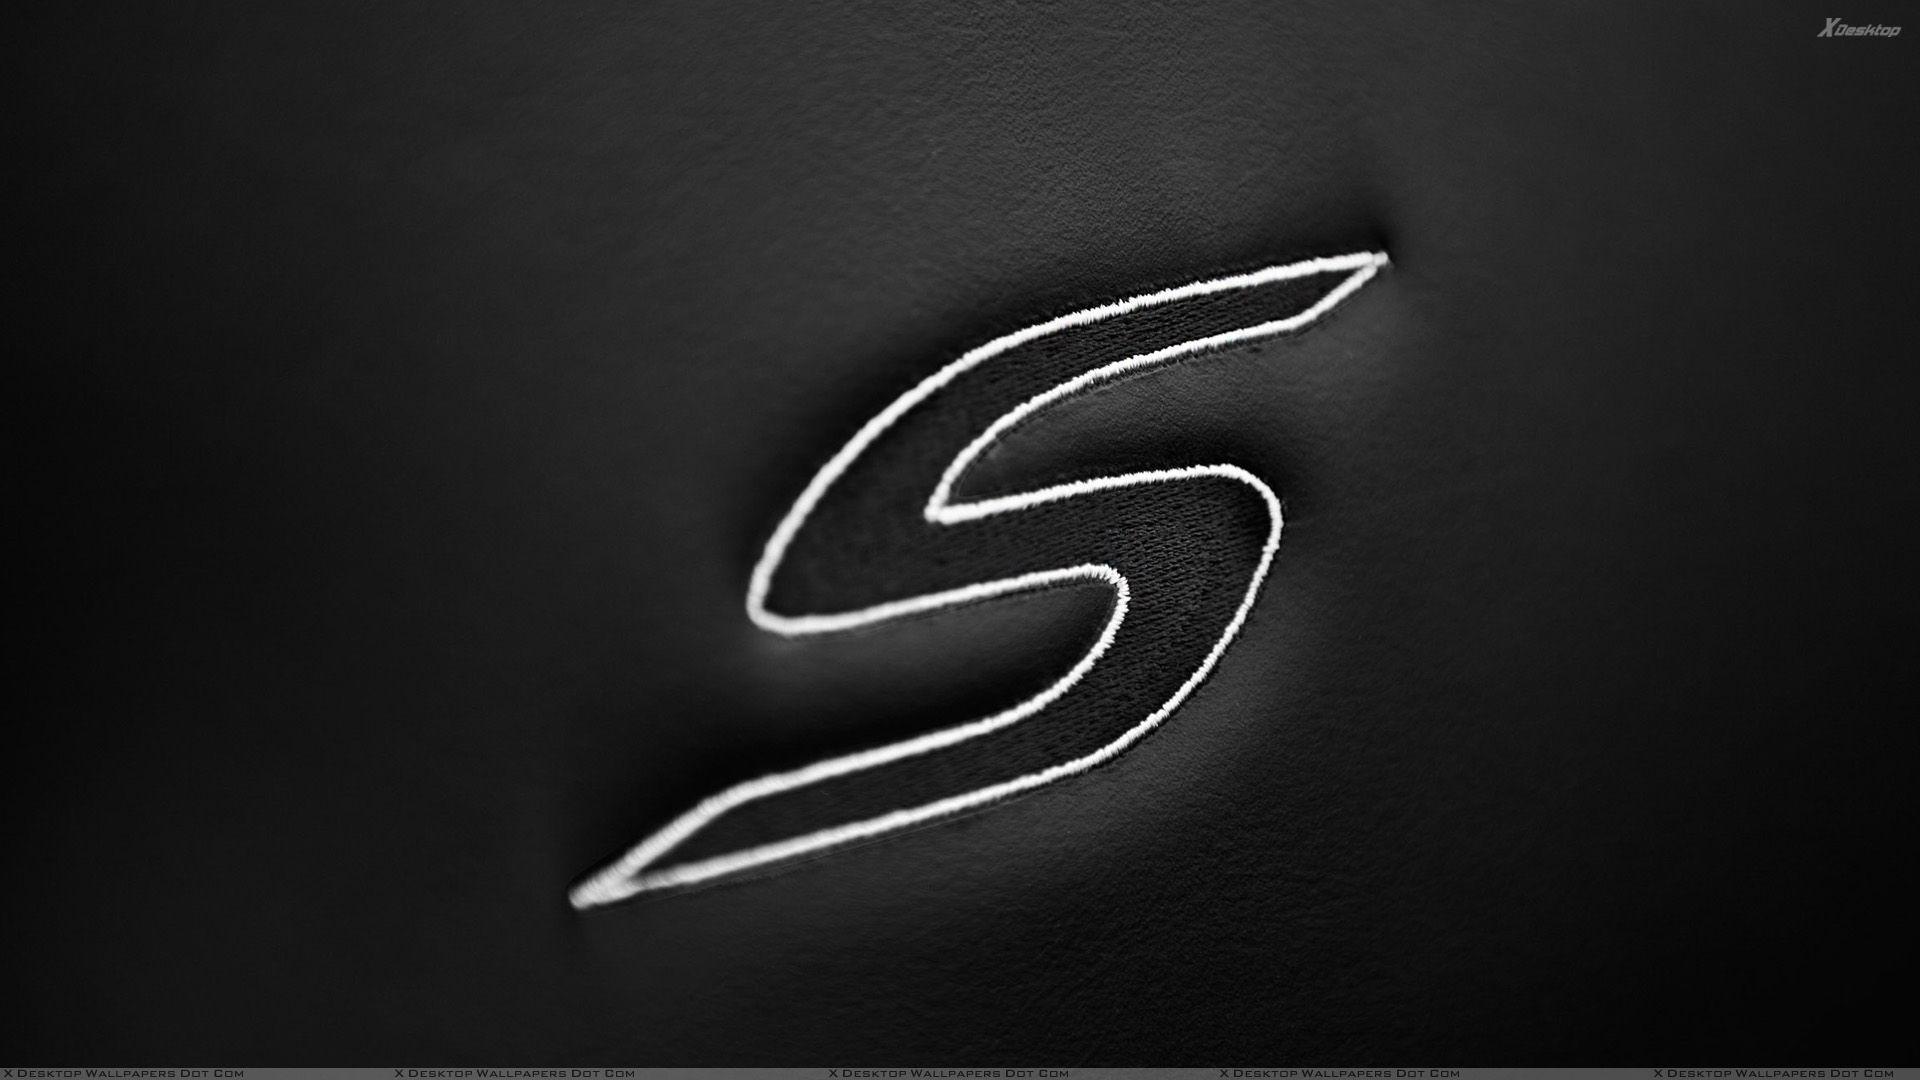 Black and White S Logo - Chrysler S LoGo And Black